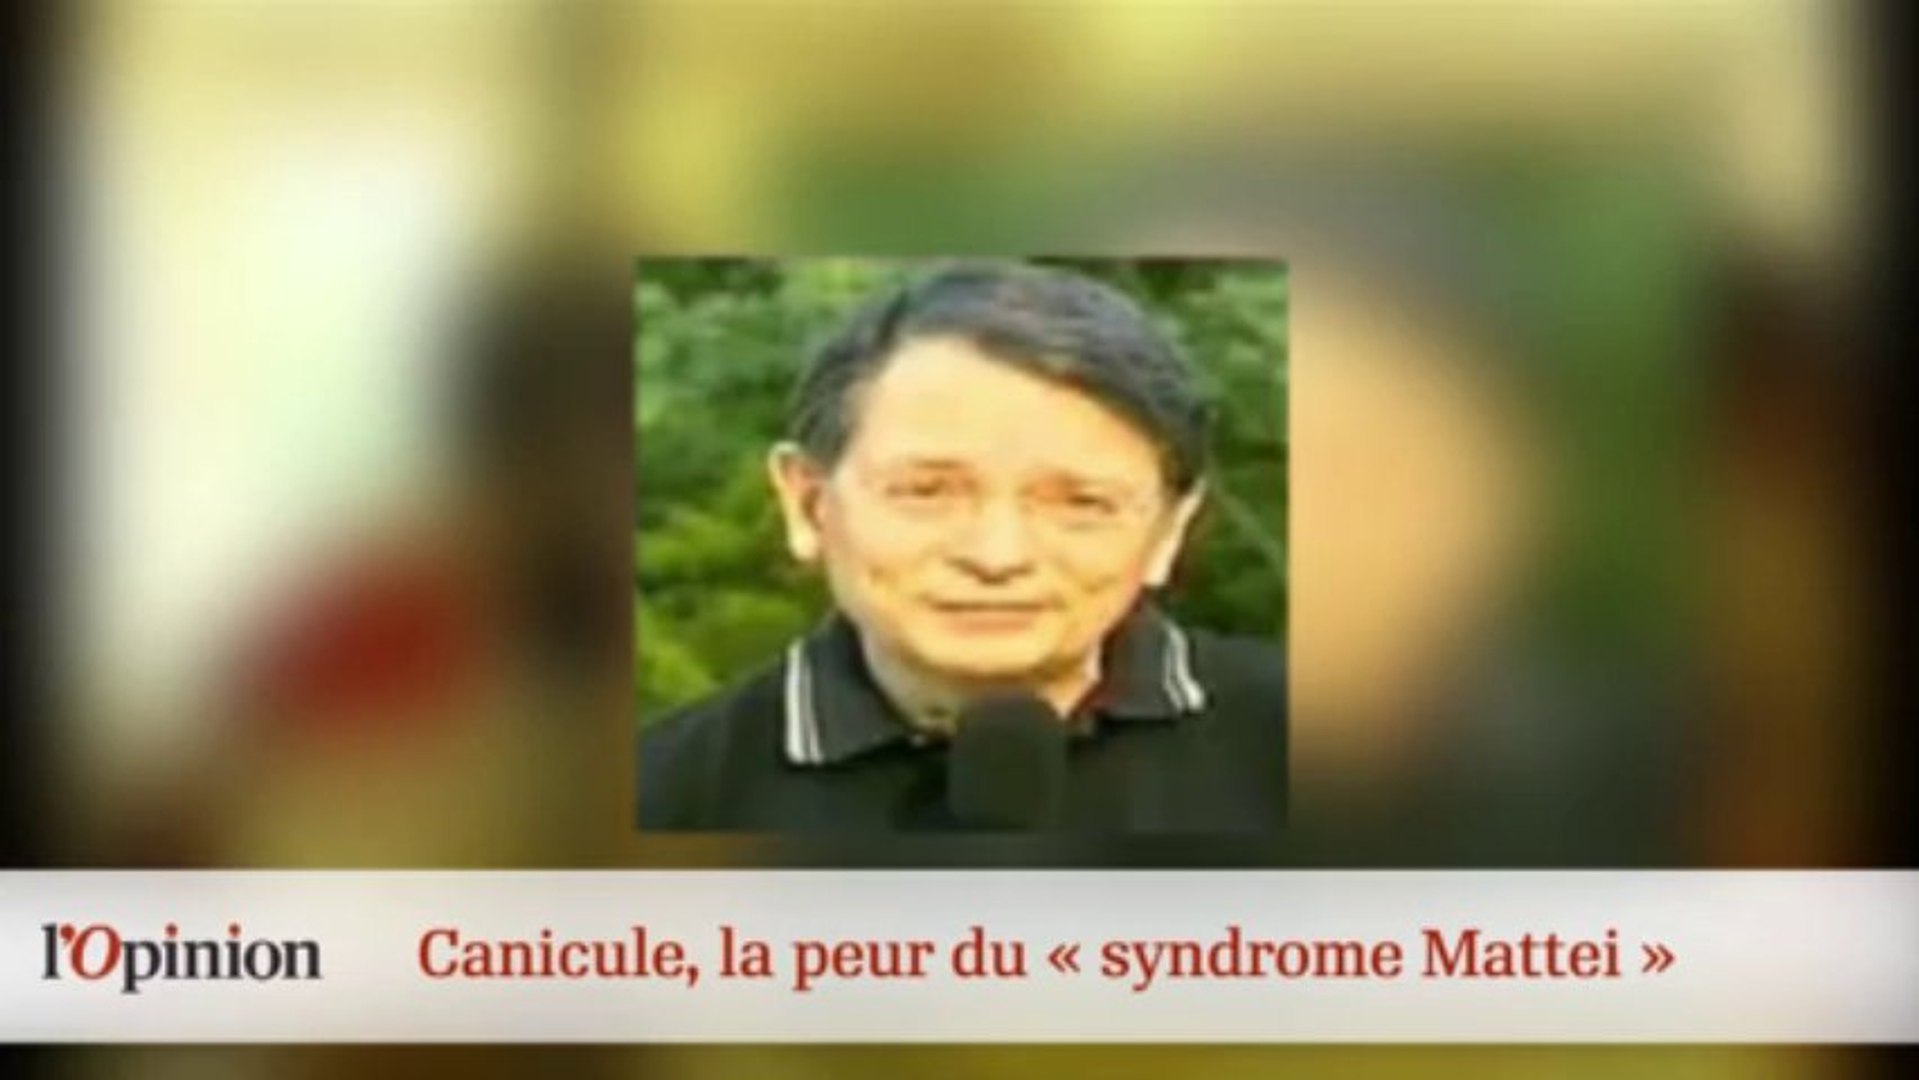 LE 18H : Canicule, la peur du « syndrôme Mattei » - Vidéo Dailymotion